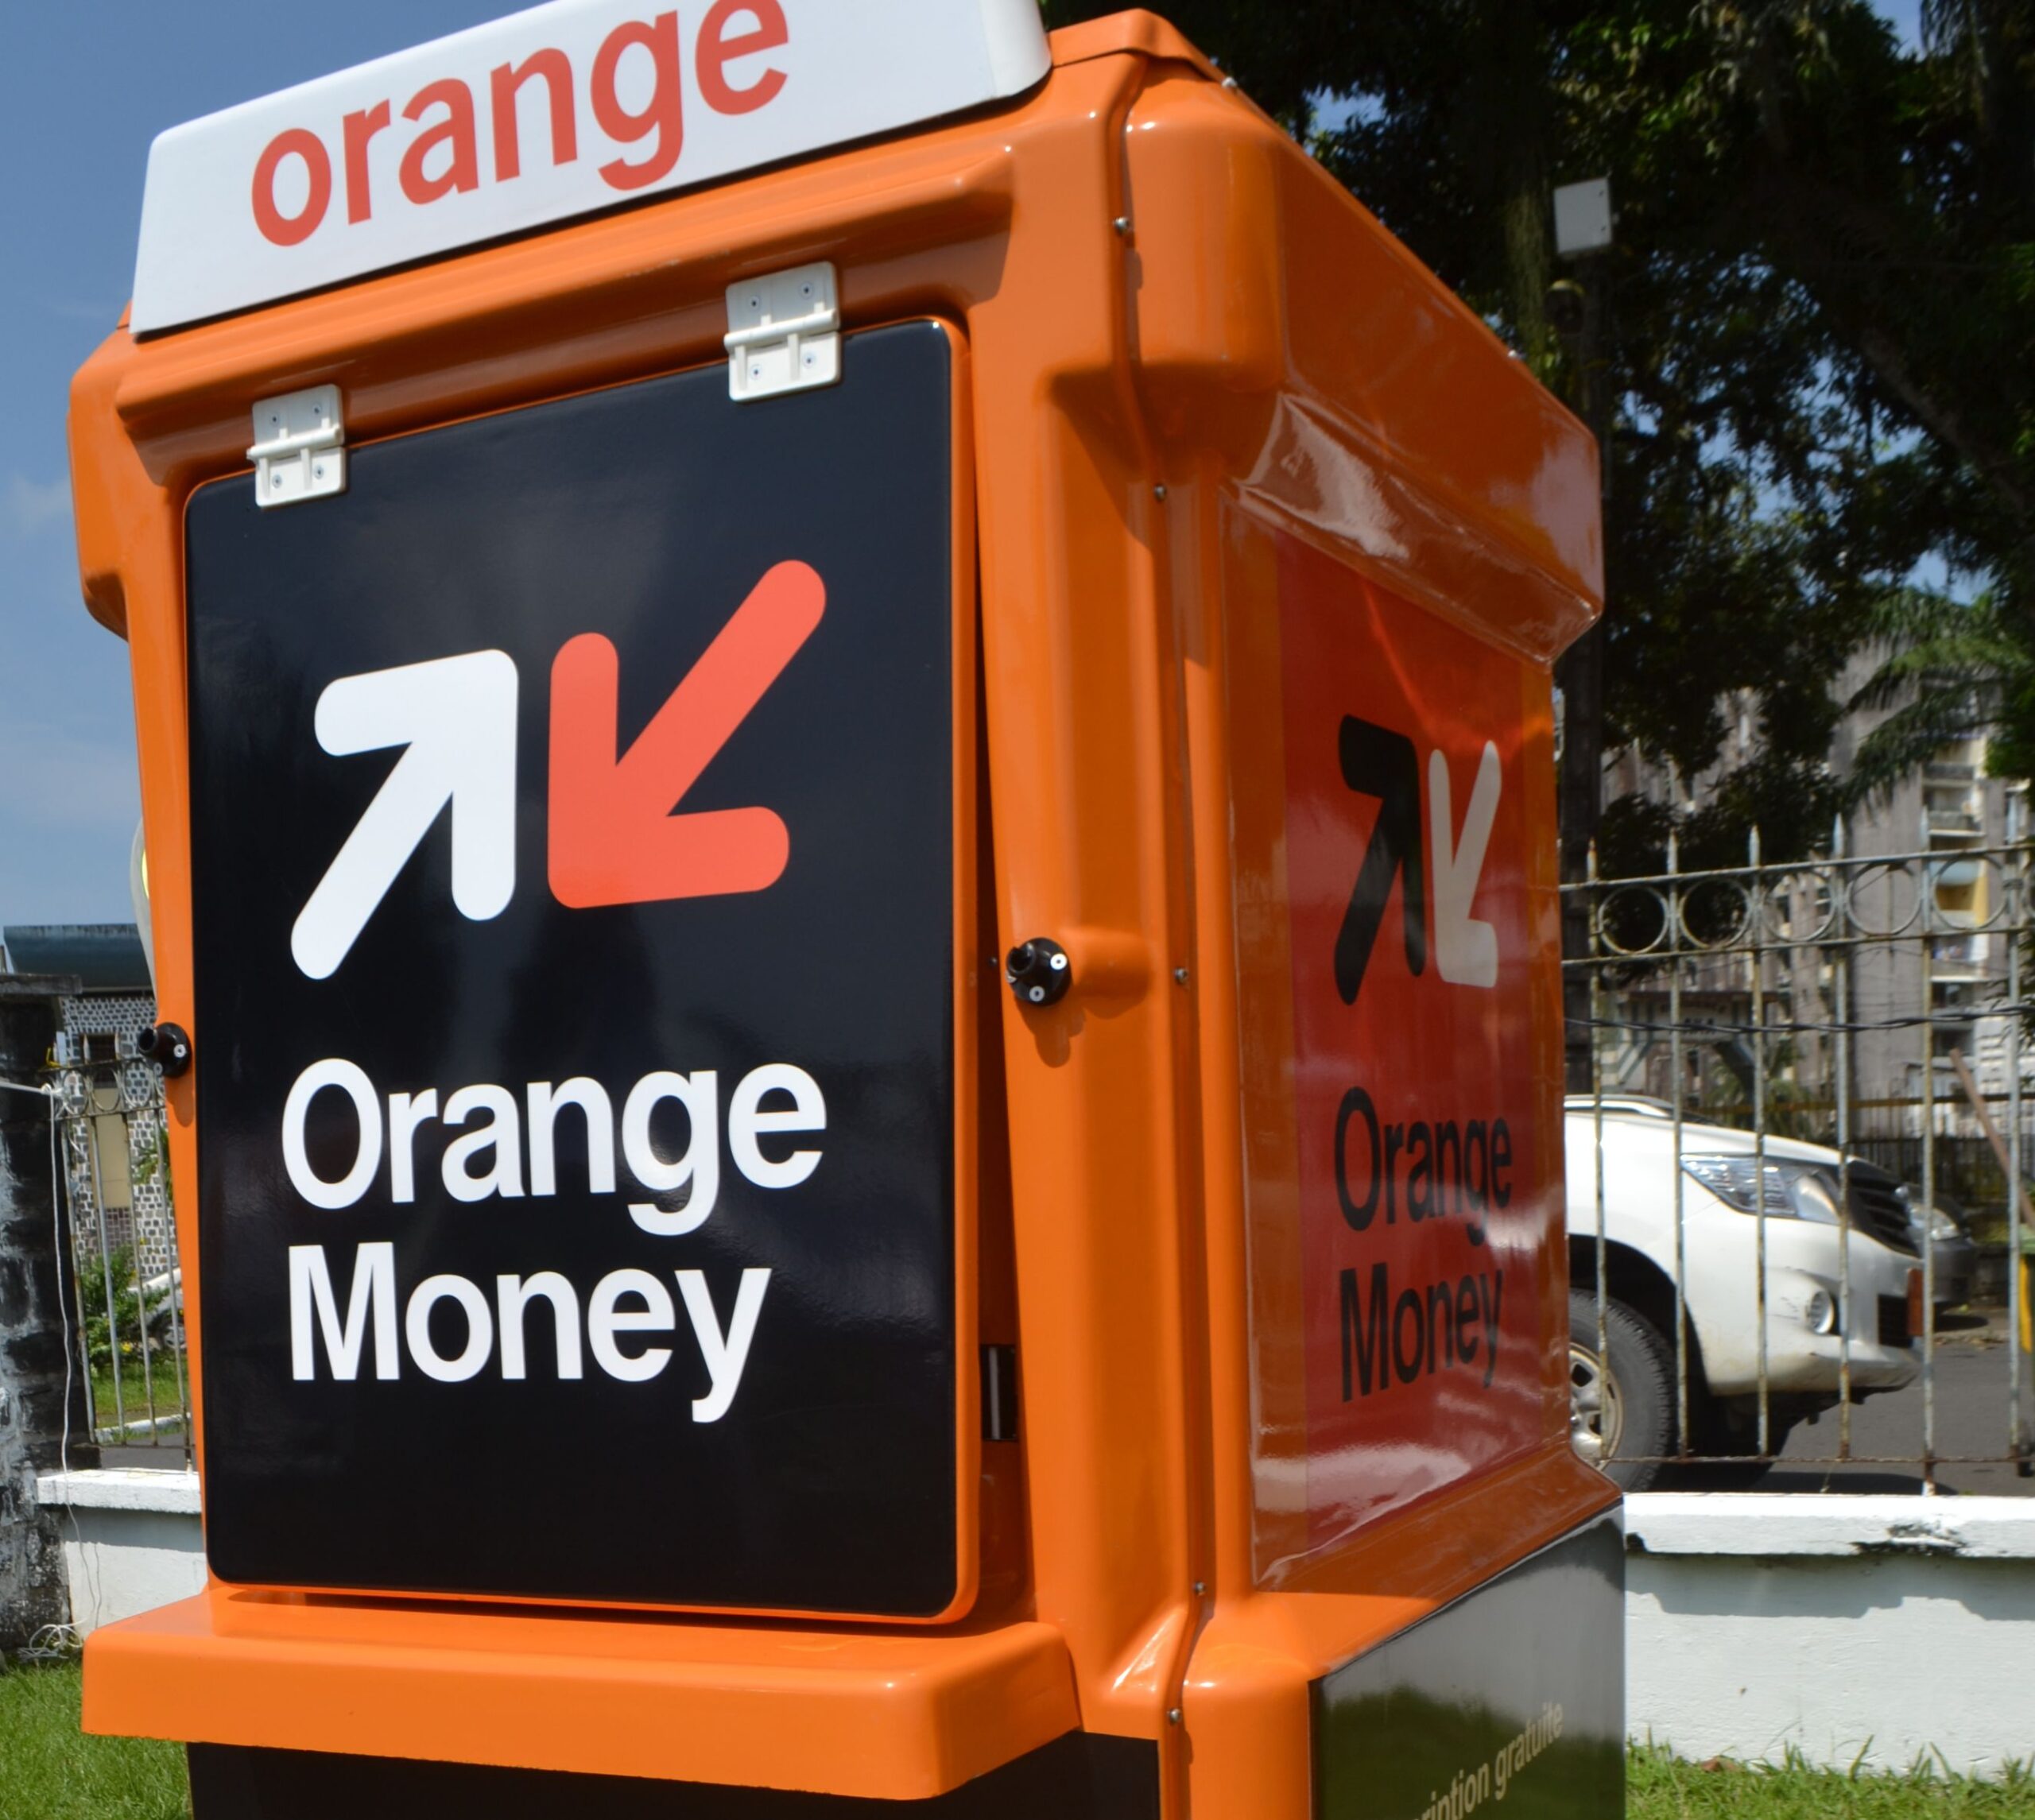 Le service Orange Money sera-t-il interrompu le 1er décembre? Orange Finances mobiles Guinée apporte des précisions